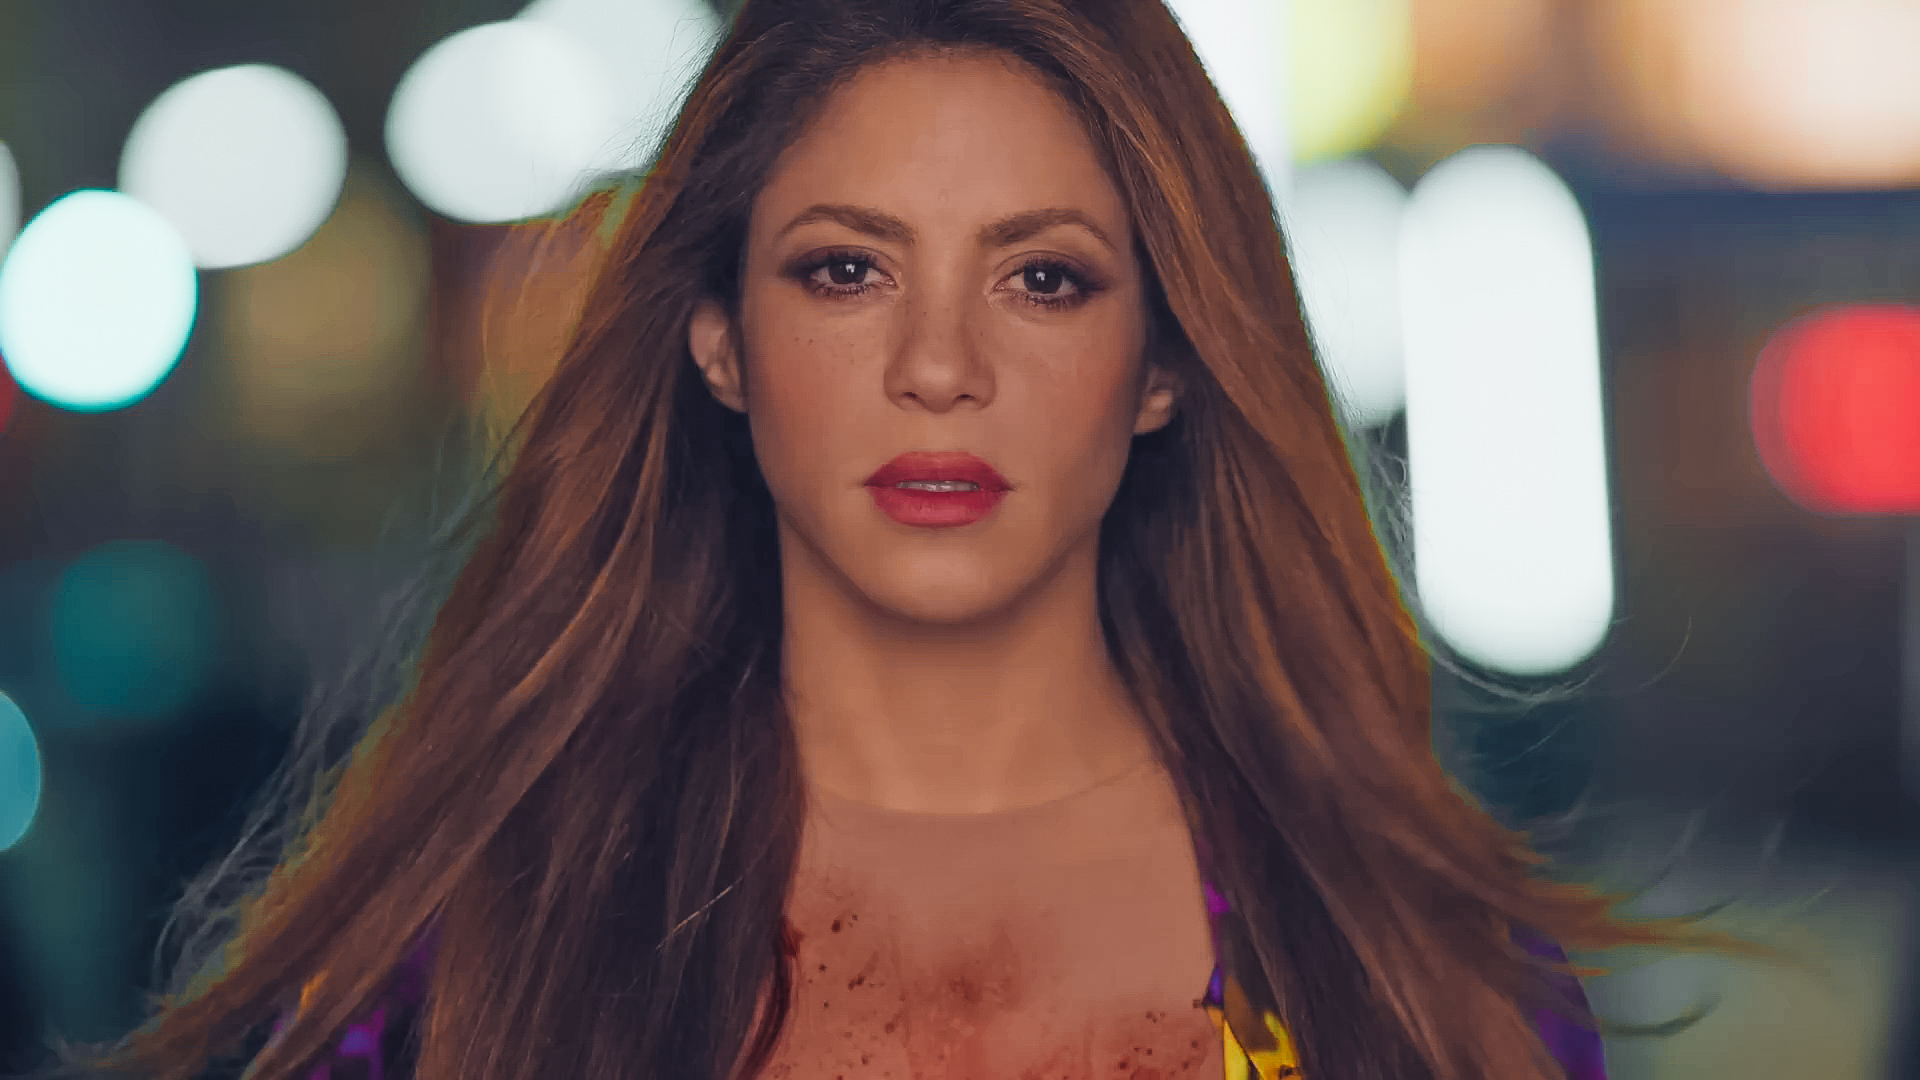 Opinião: Após término, Shakira reacende a chama de sua carreira com o impactante clipe de “Monotonía”